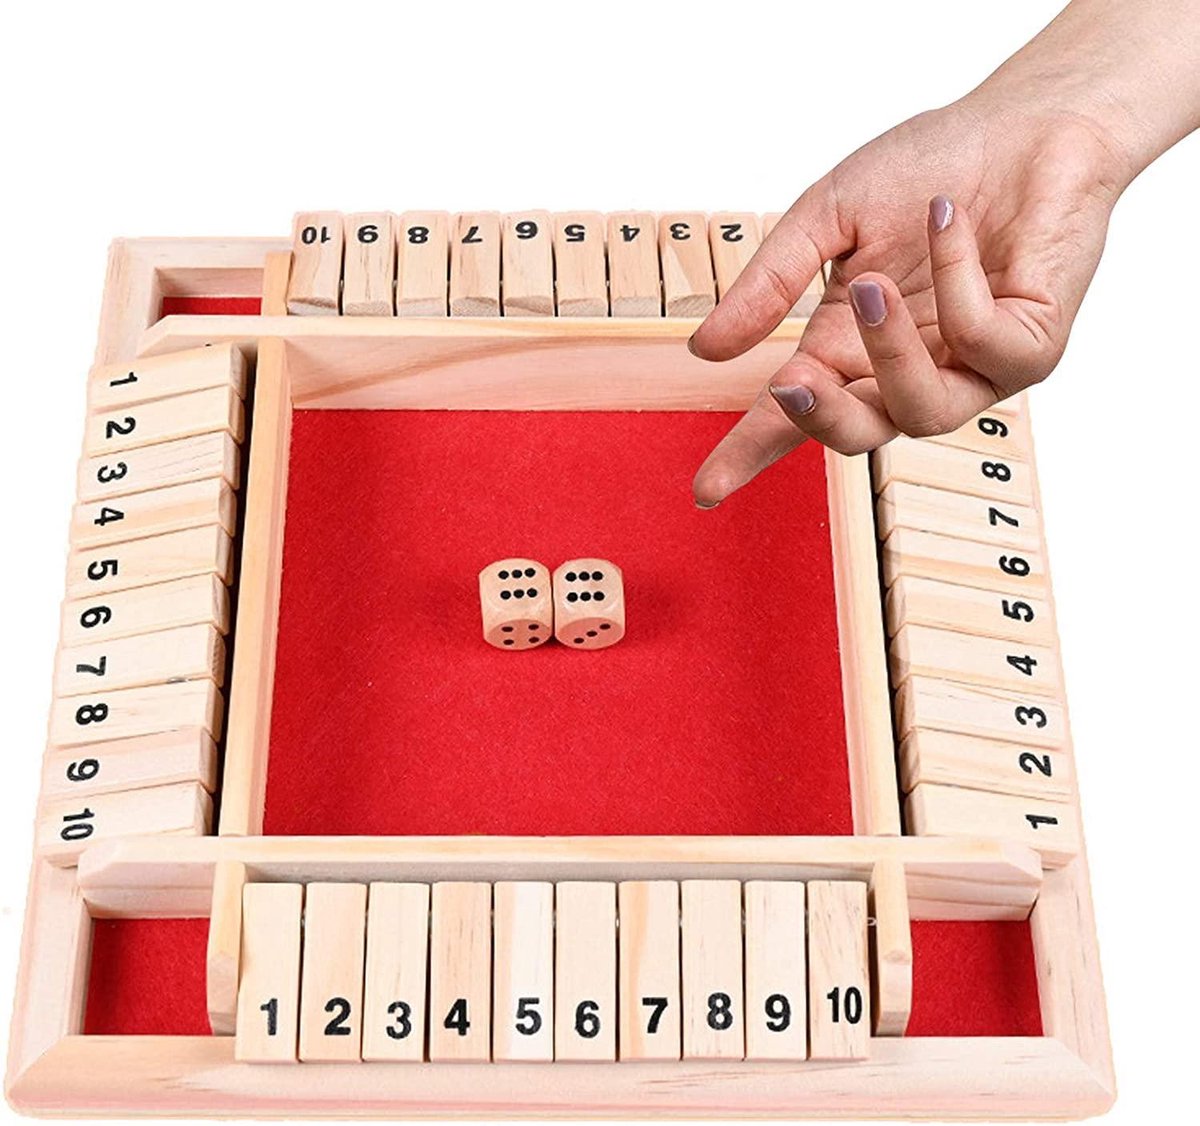 Sluit de doos - Zinaps Wooden Board Game, Classic Dice Game Board Toy, Sluit de doos, familie Maths Game voor kinderen, houten tafel spel, klassiek- (WK 02127)